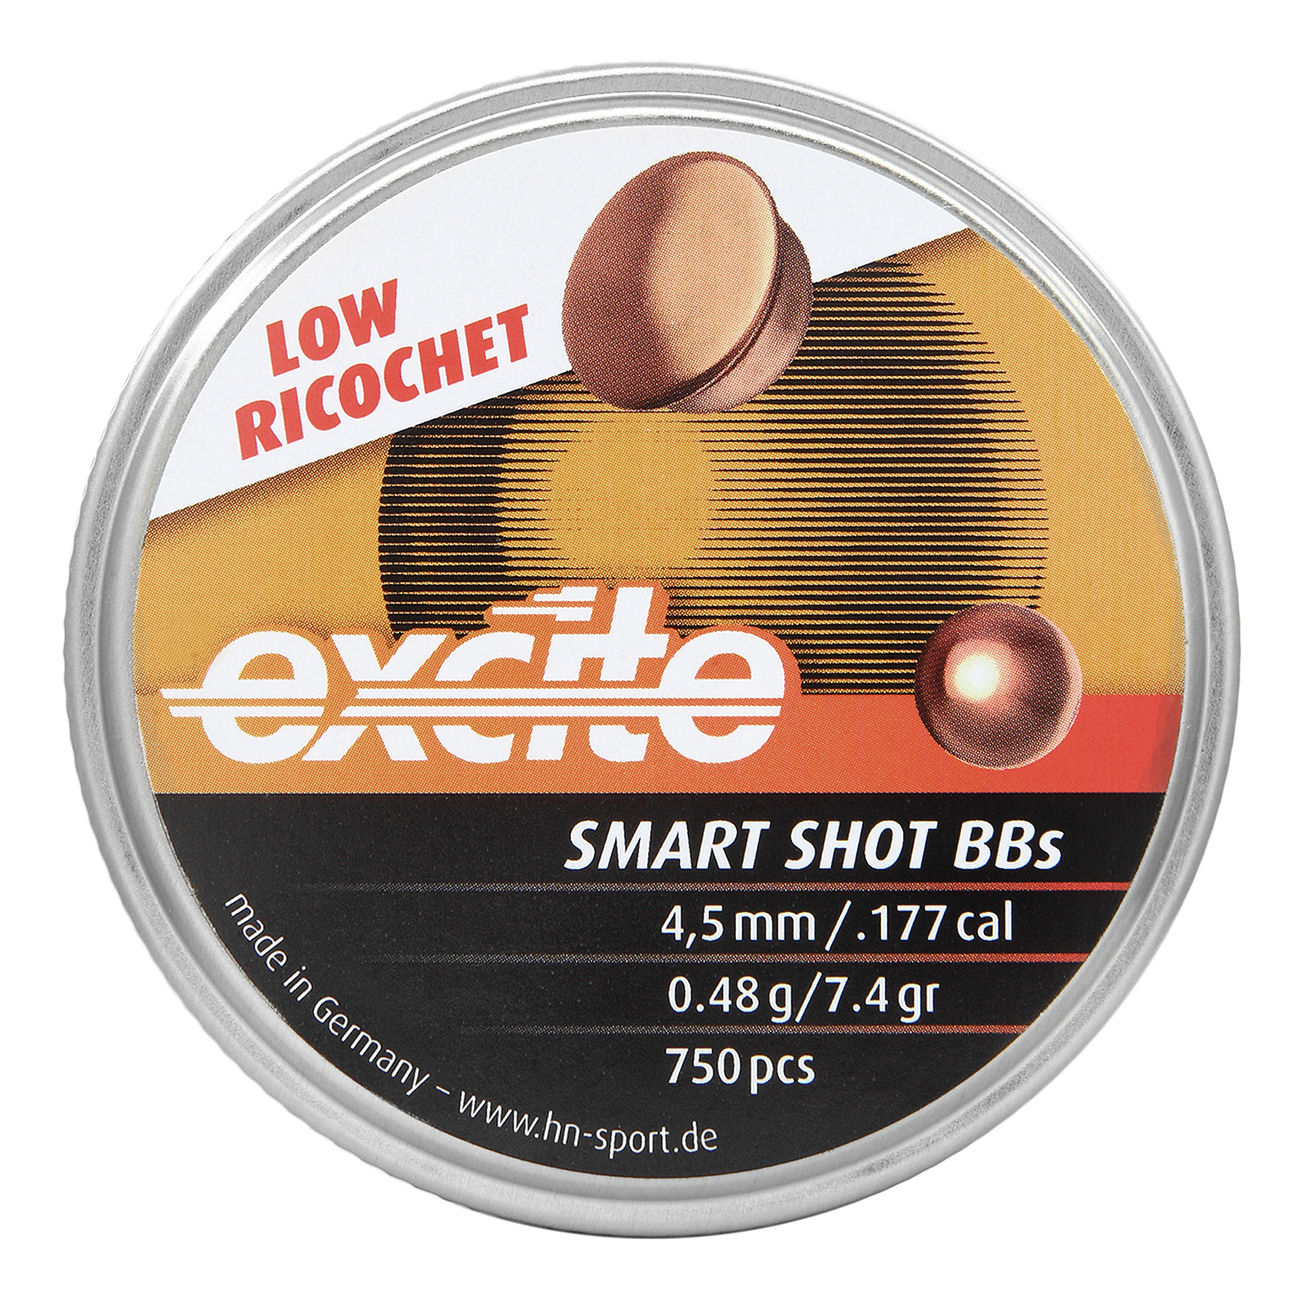 H&N Excite Smart Shot BBs 4,5mm 750 Stück Bild 1